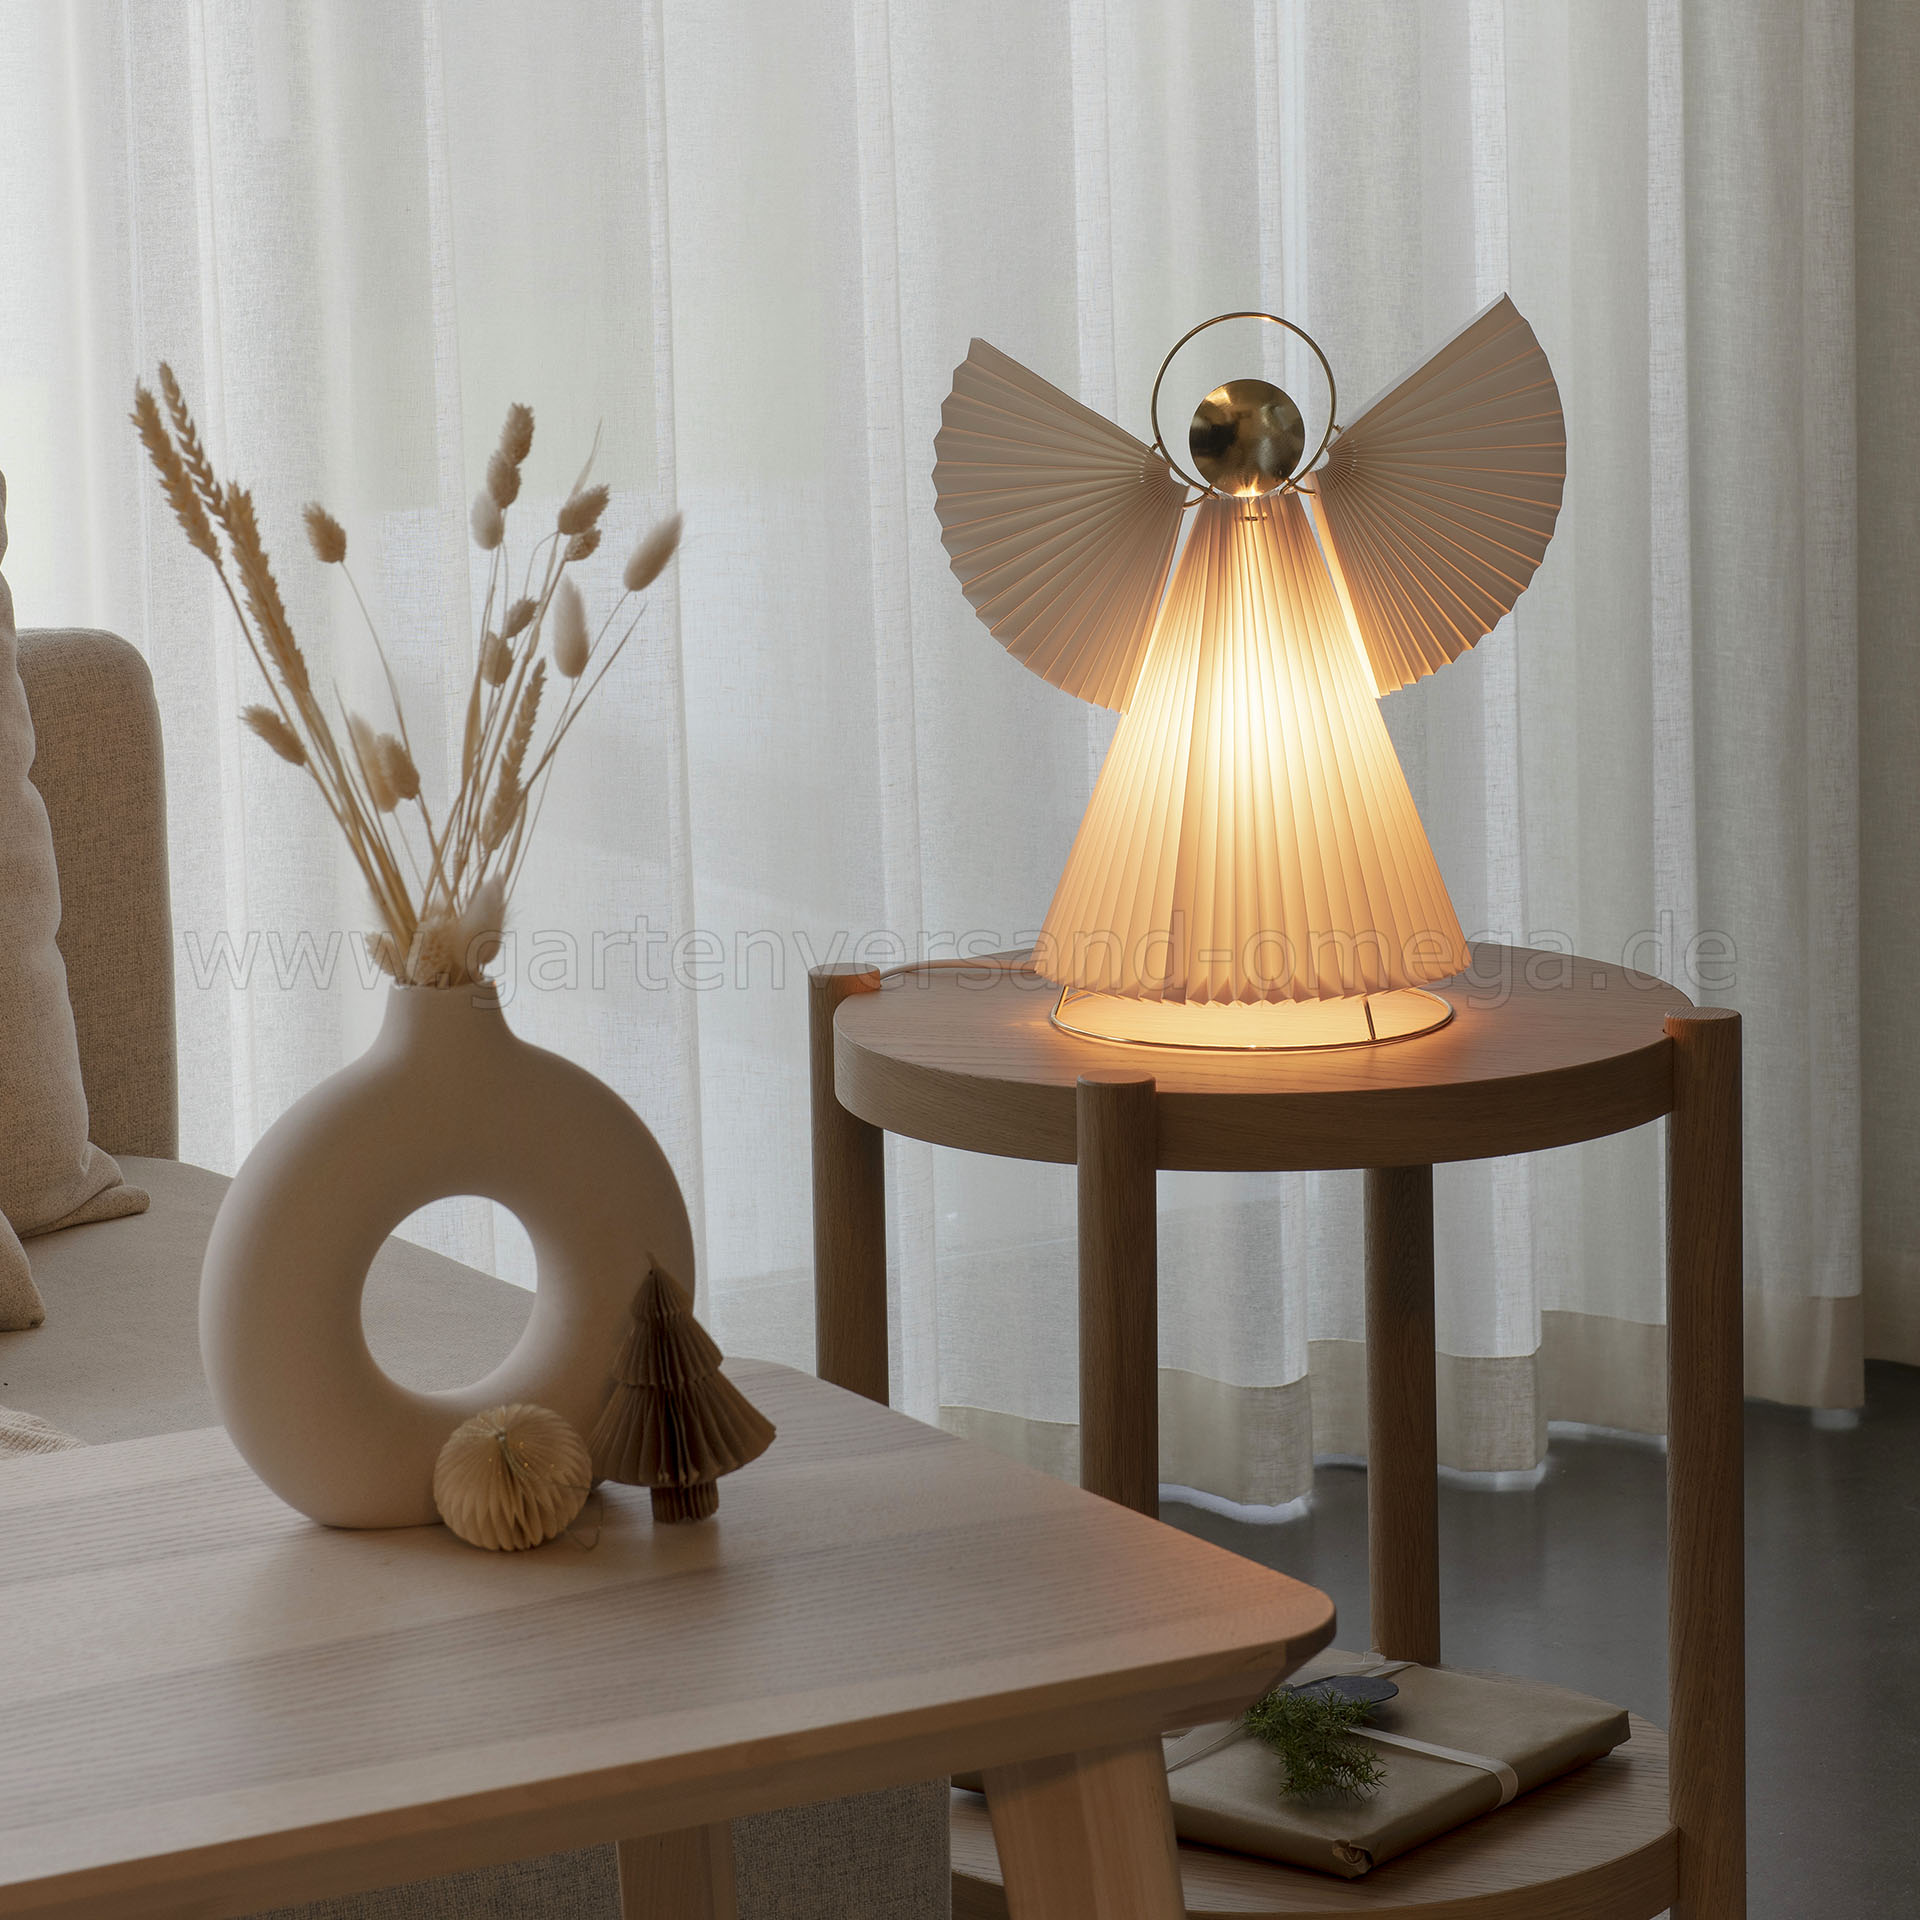 Engel Lampe in Innenraum-Lampen online kaufen